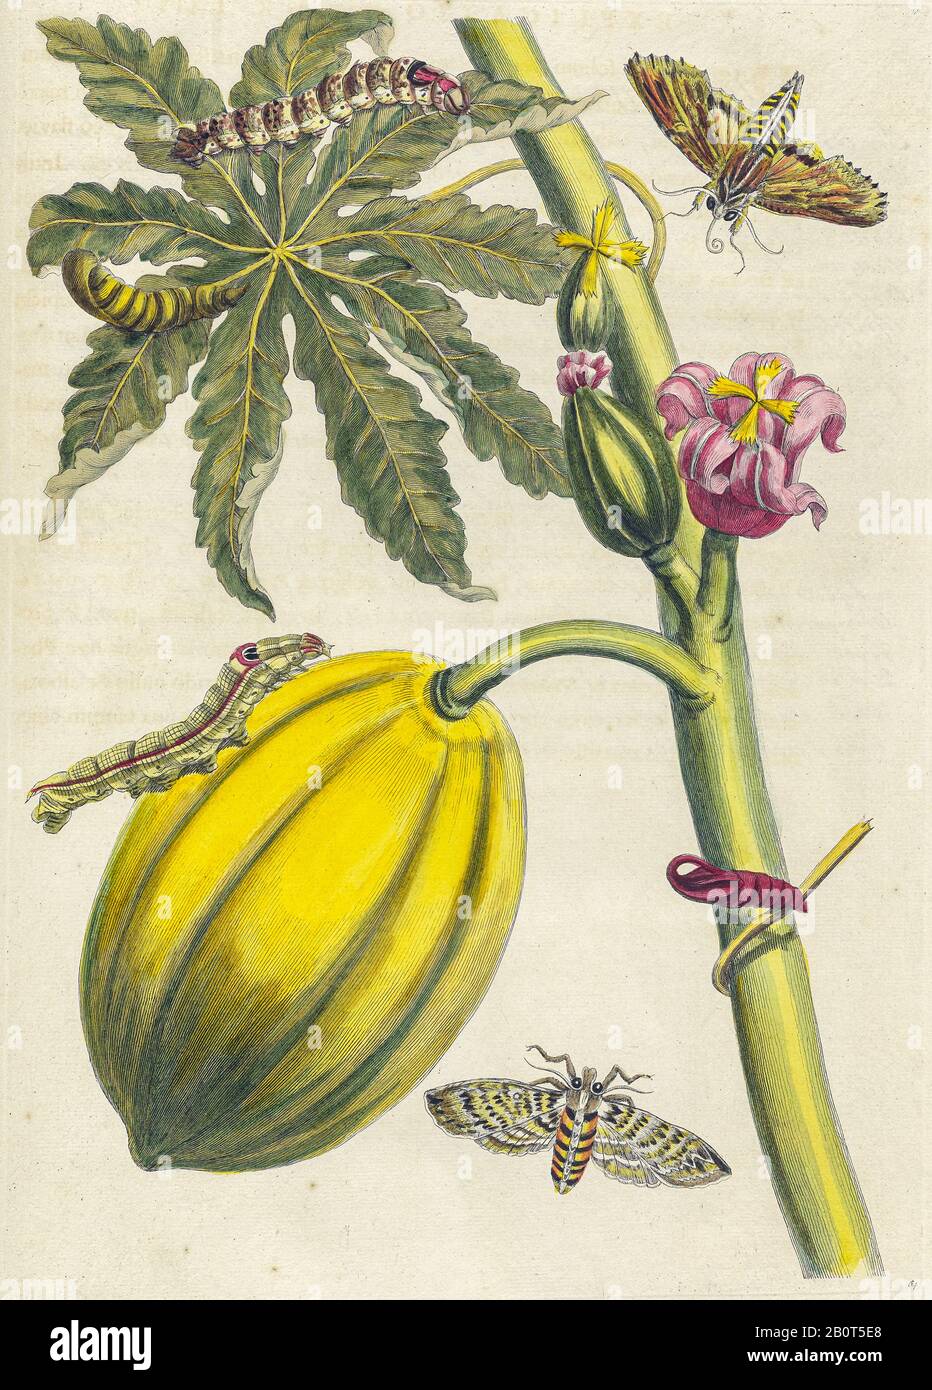 Planta y mariposa de Metamorfosis insectorum Surinam (insectos de Surinam) un libro coloreado a mano del siglo XVIII de Maria Sibylla Merian publicado Foto de stock